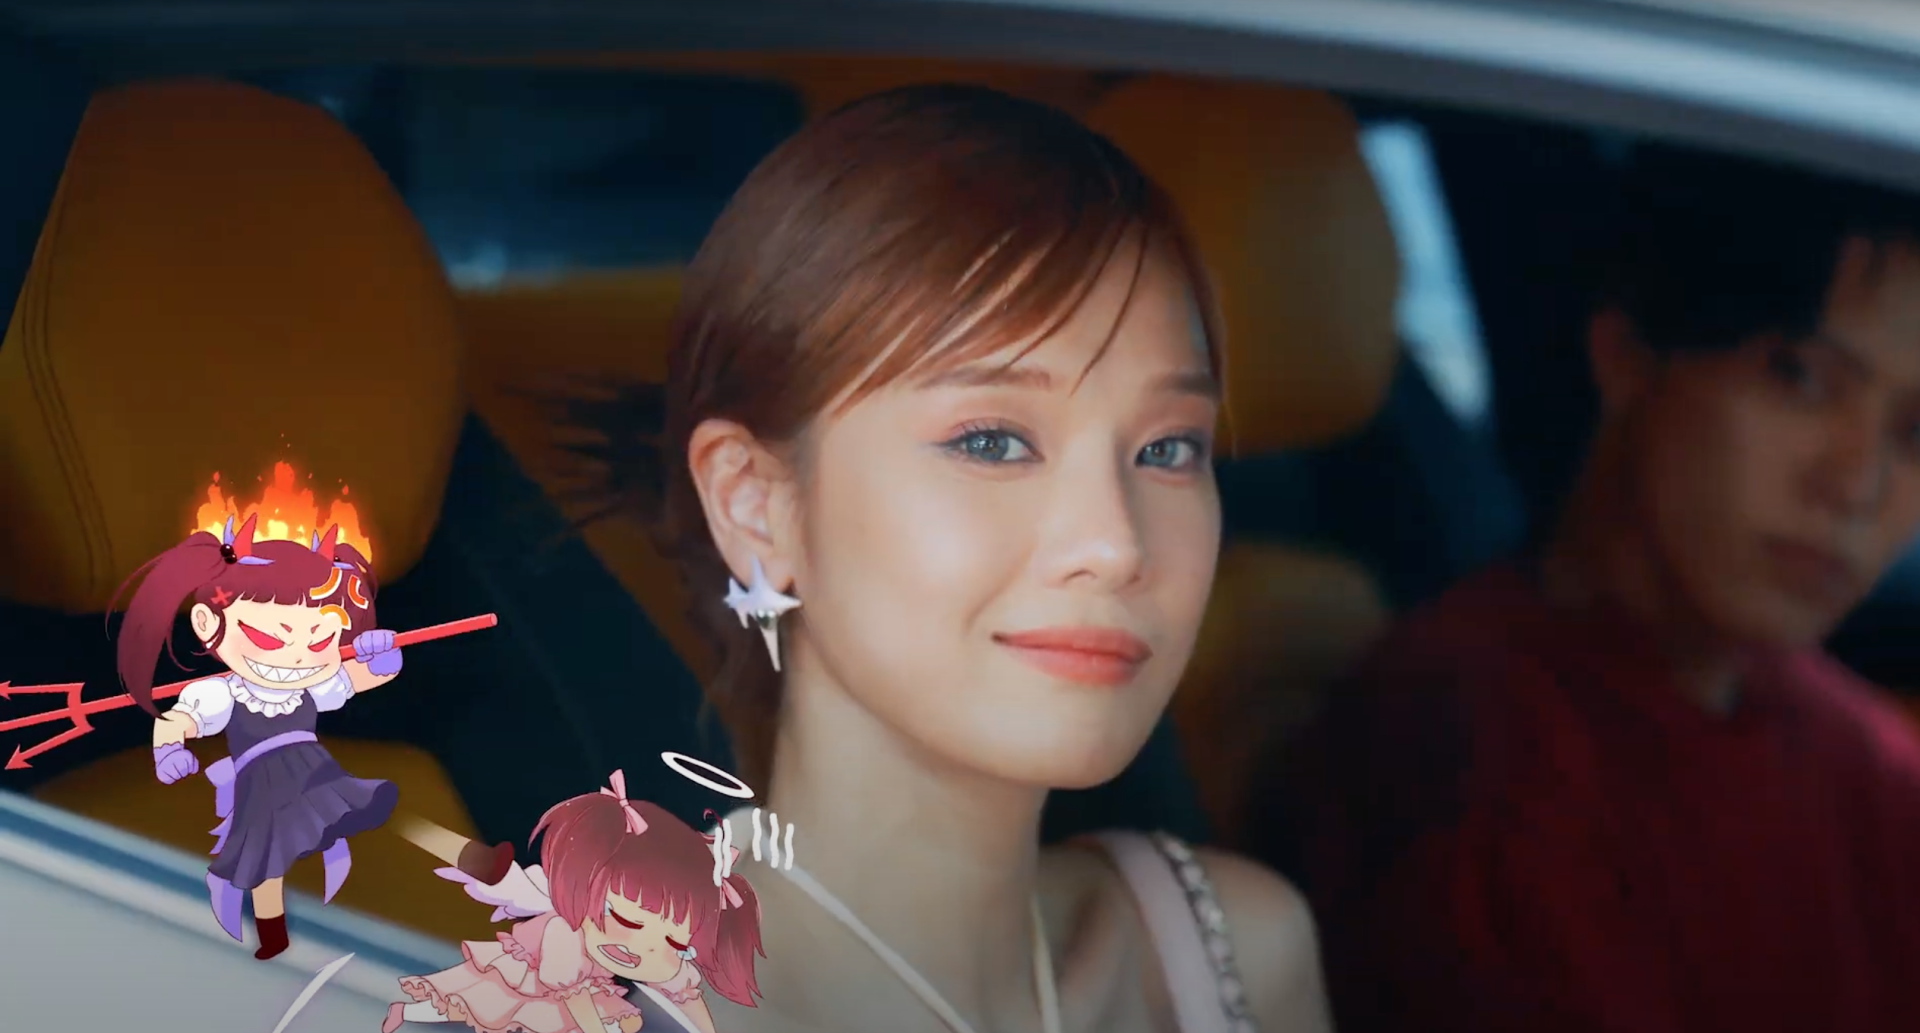 Hoàng Yến Chibi đầy 'thái độ', bị 'trai đẹp nhiều tiền' chặn đường trong teaser MV 'Sốc Nhiệt' - ảnh 4